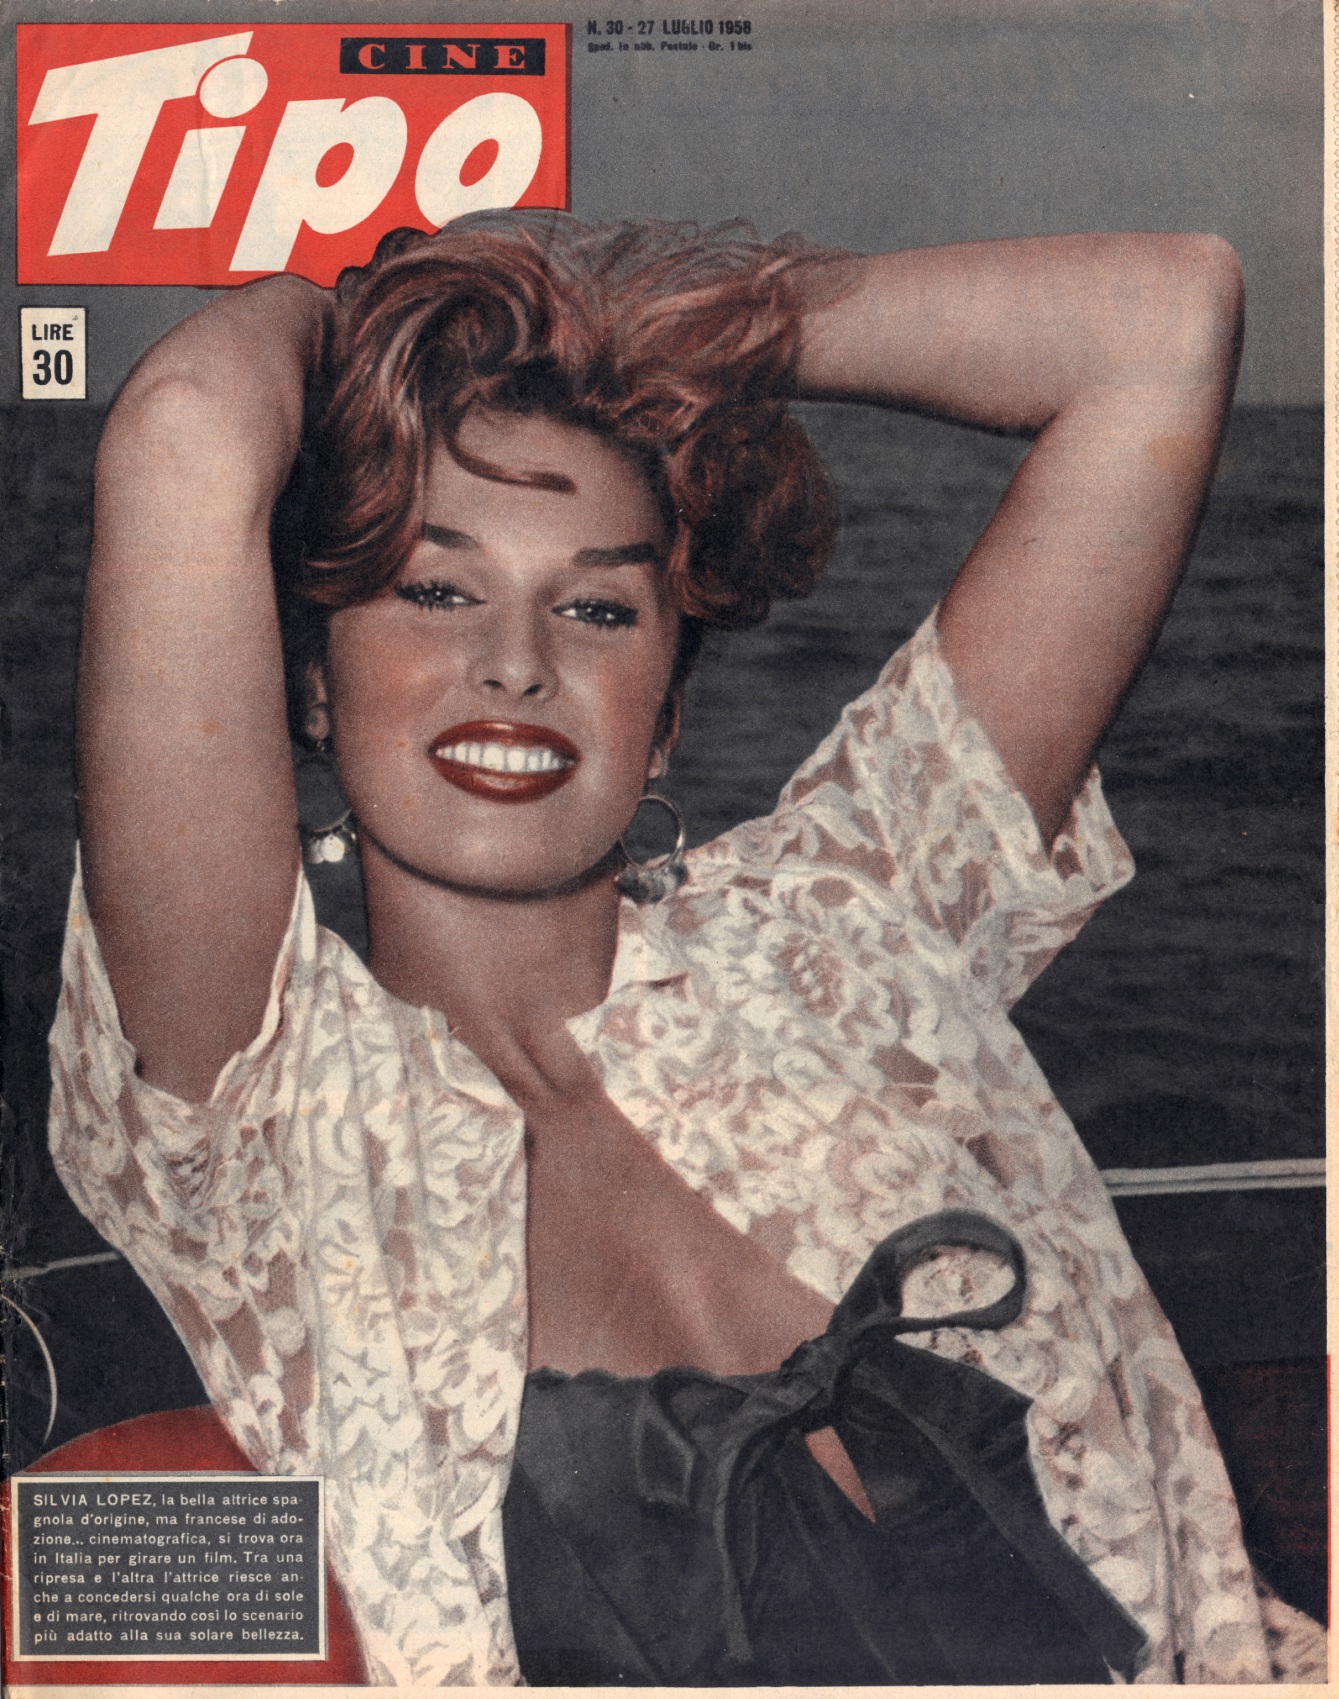 Cine Tipo 30 1958 - Sylvia Lopez.jpg